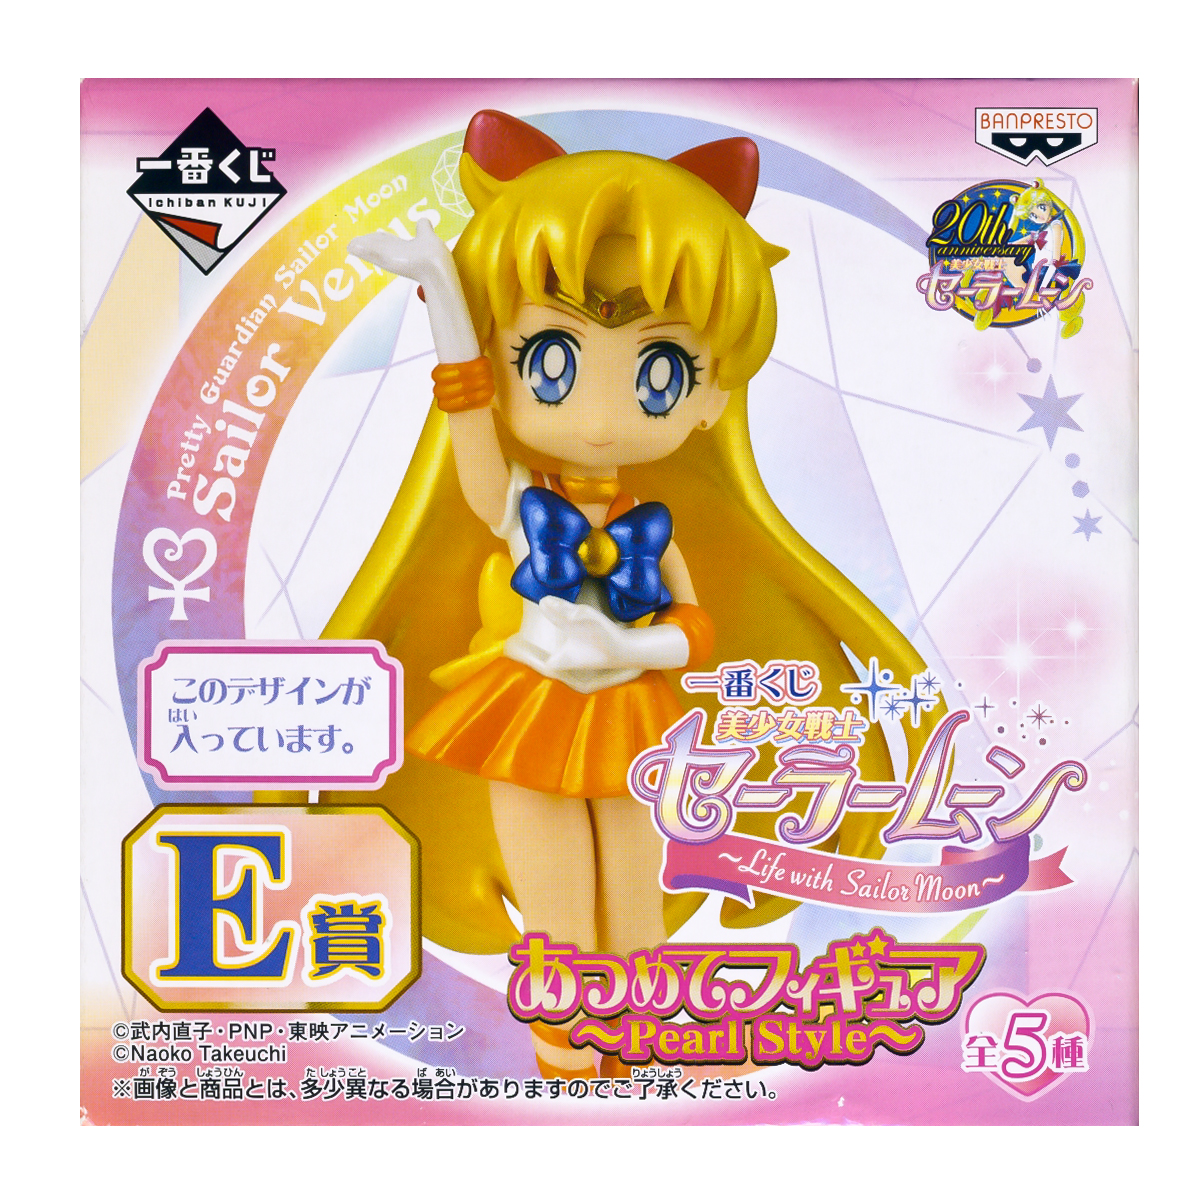 Sailor Venus Atsumete Trading Figure Banpresto Anime G Prize 20th Anniversary Special